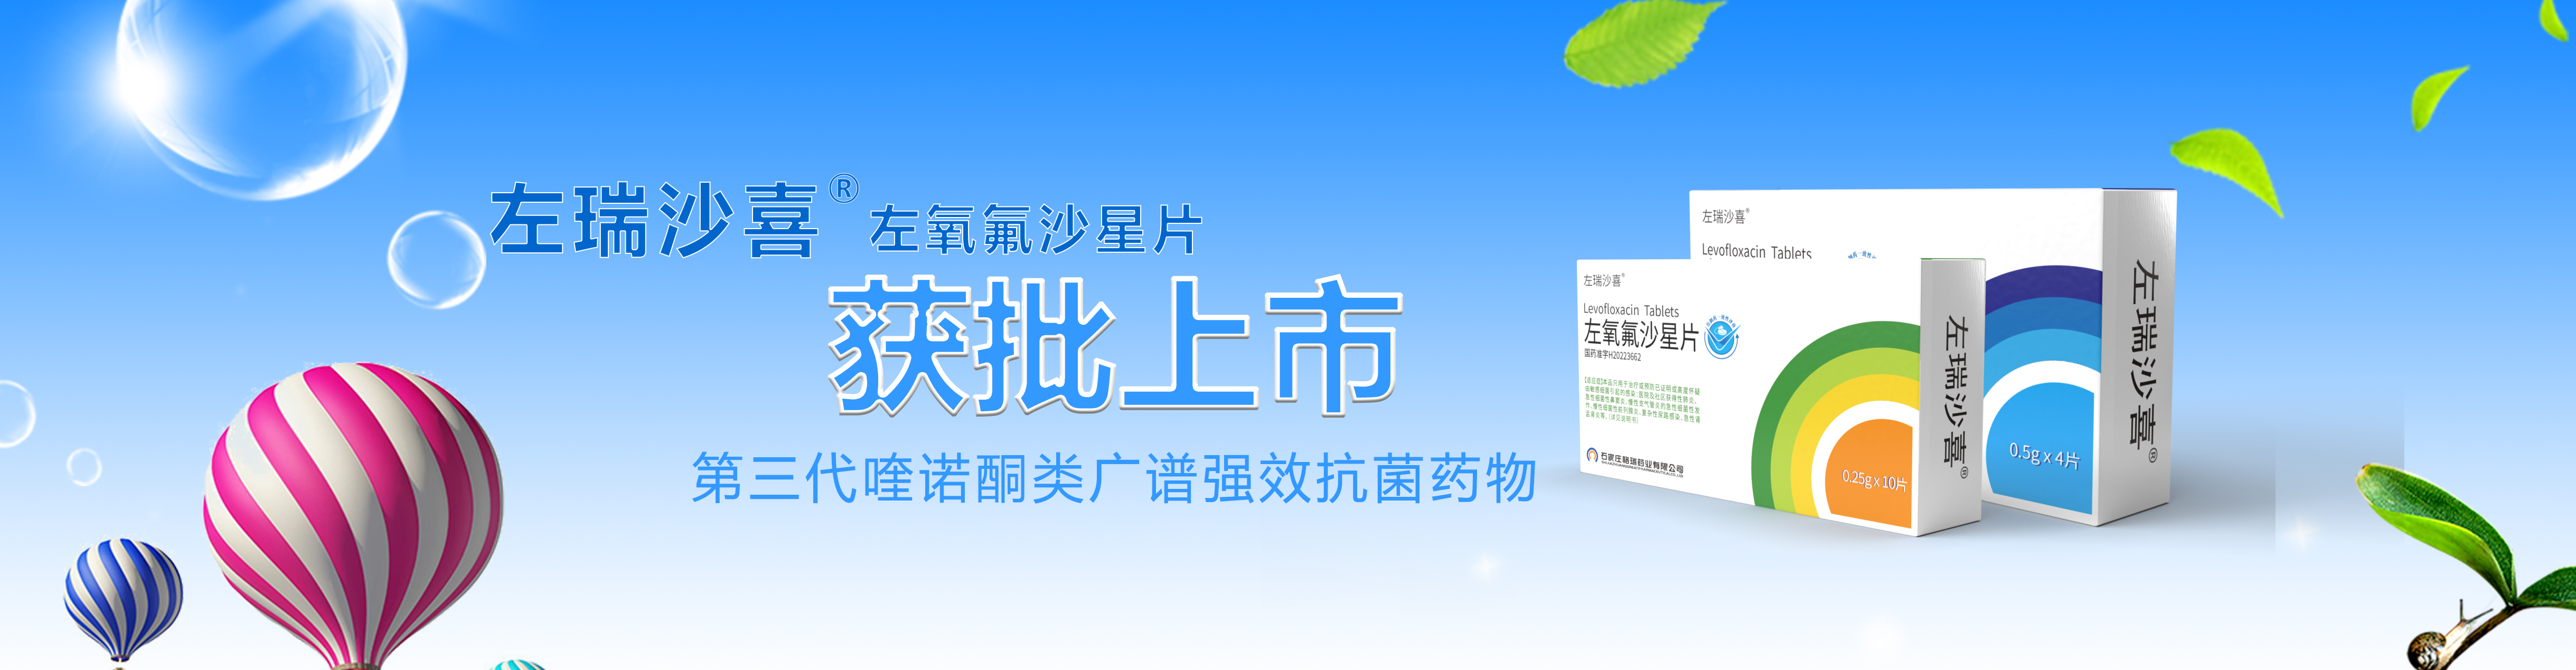 关于当前产品168计划客户端·(中国)官方网站的成功案例等相关图片